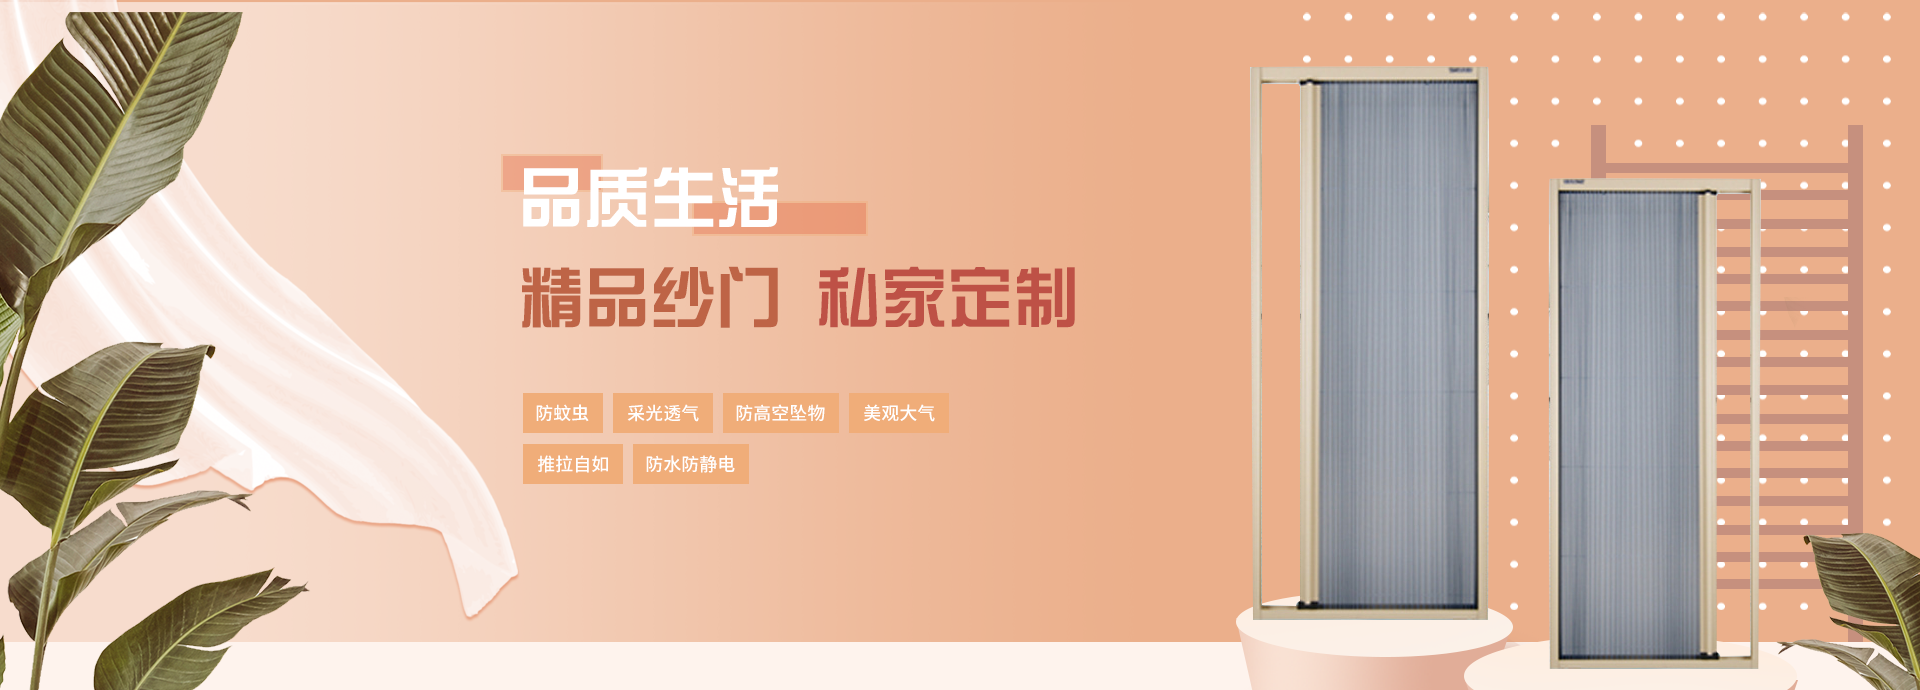 龙8-long8(中国)唯一官方网站_产品6930